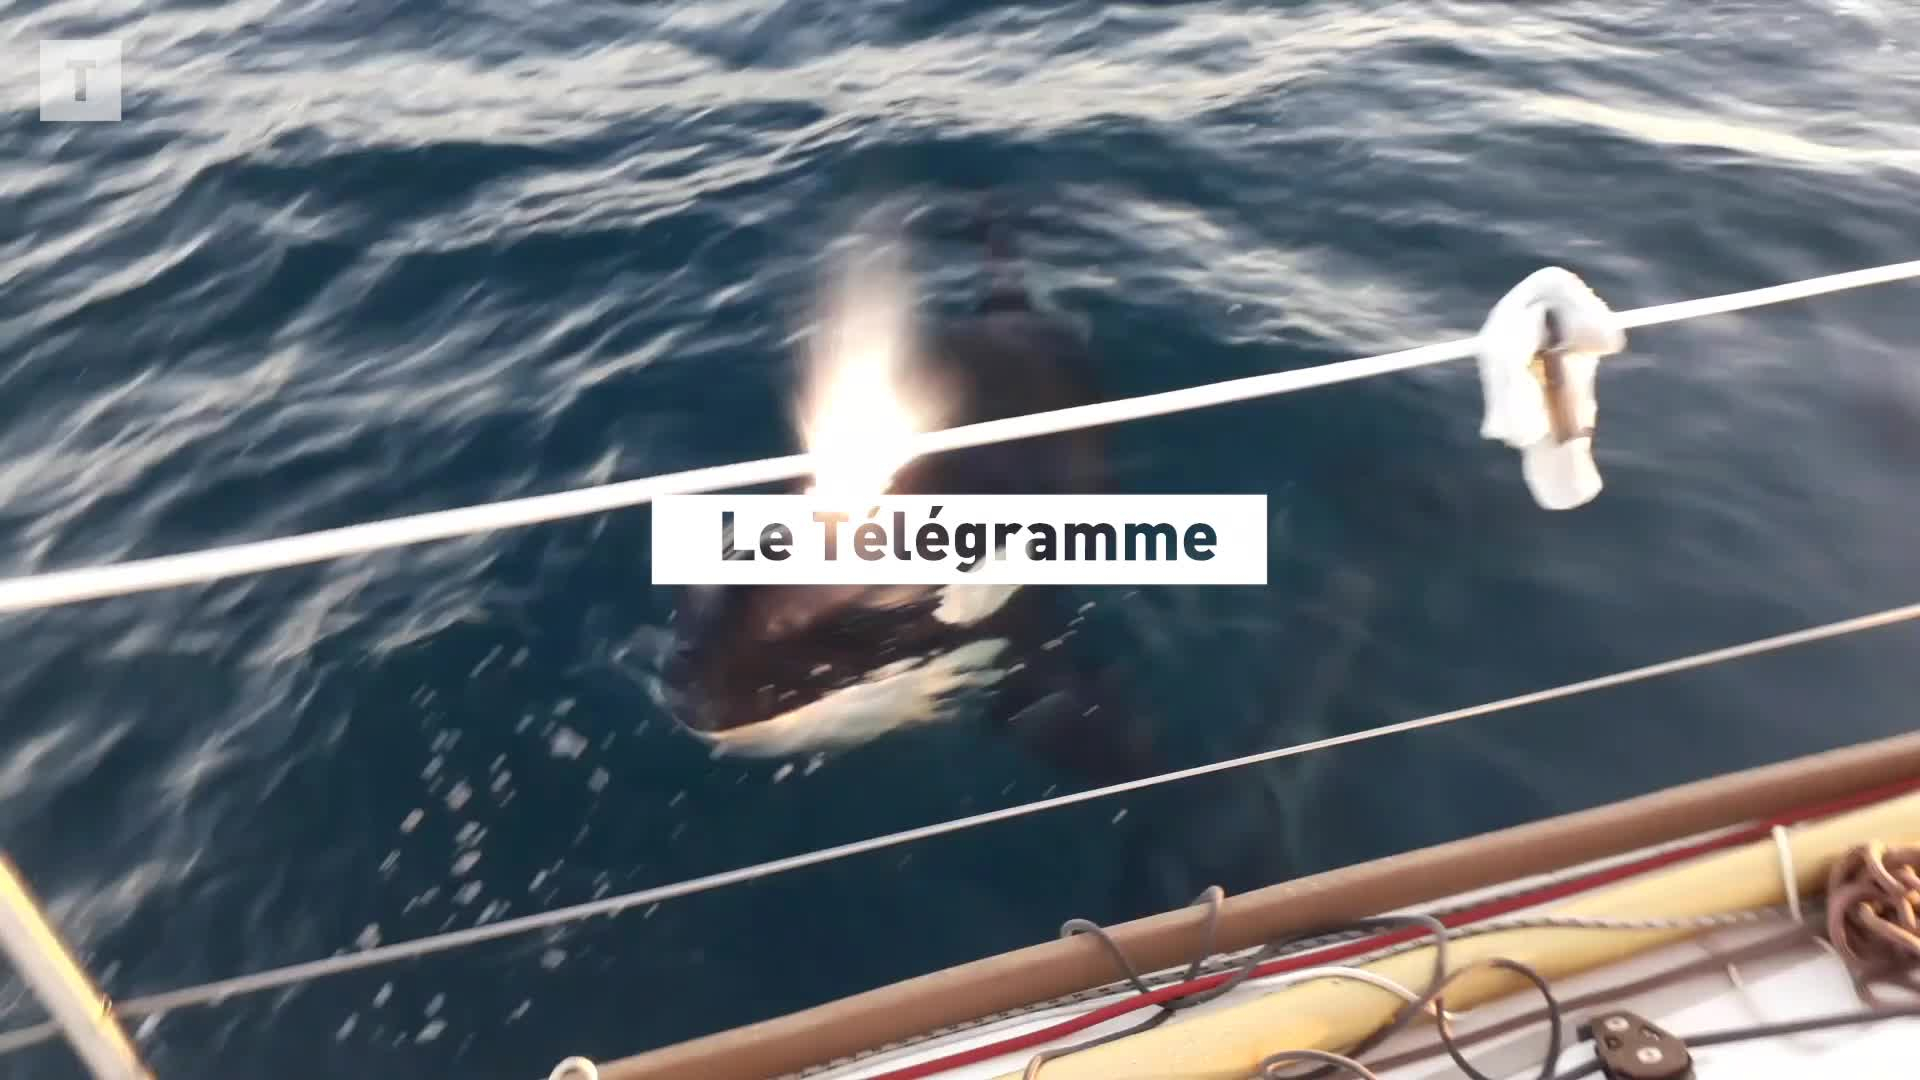 Des orques s’en prennent à son bateau au large du Portugal, la Brestoise Lucie témoigne (Le Télégramme)